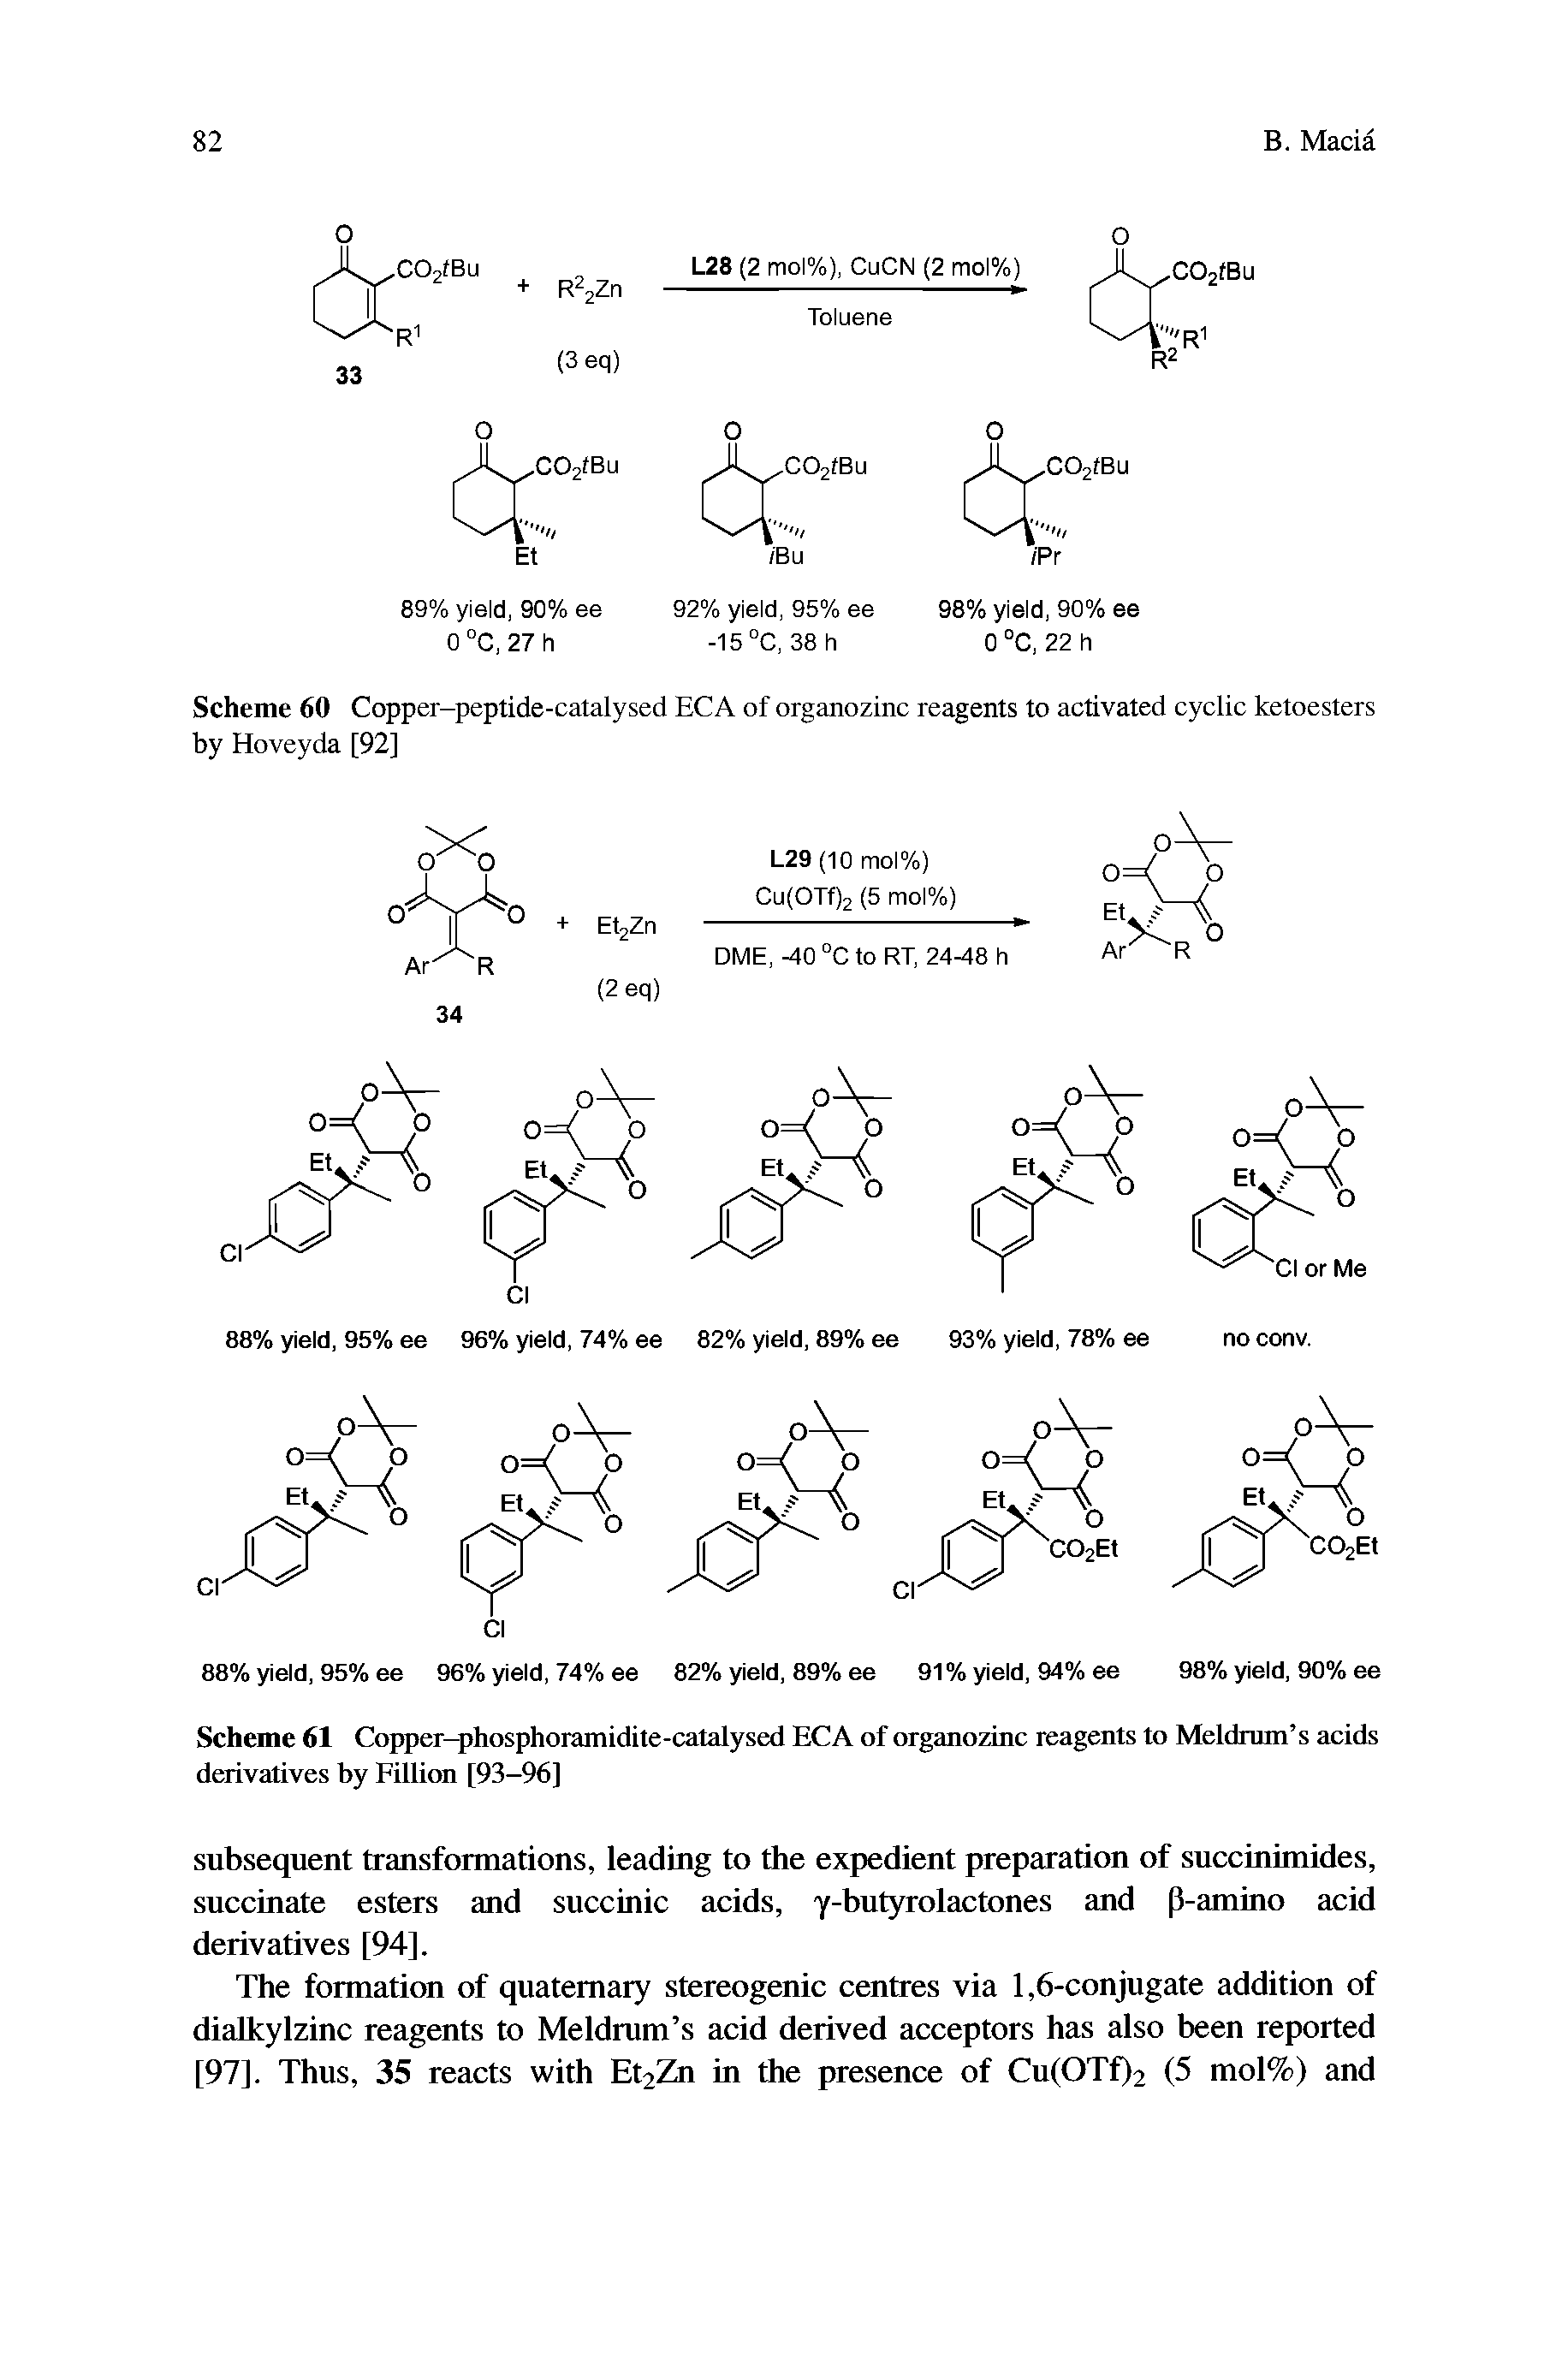 Scheme 61 Copper-phosphoramidite-catalysed ECA of organozinc reagents to Meldrum s acids dtaivatives by Fillirai [93-96]...